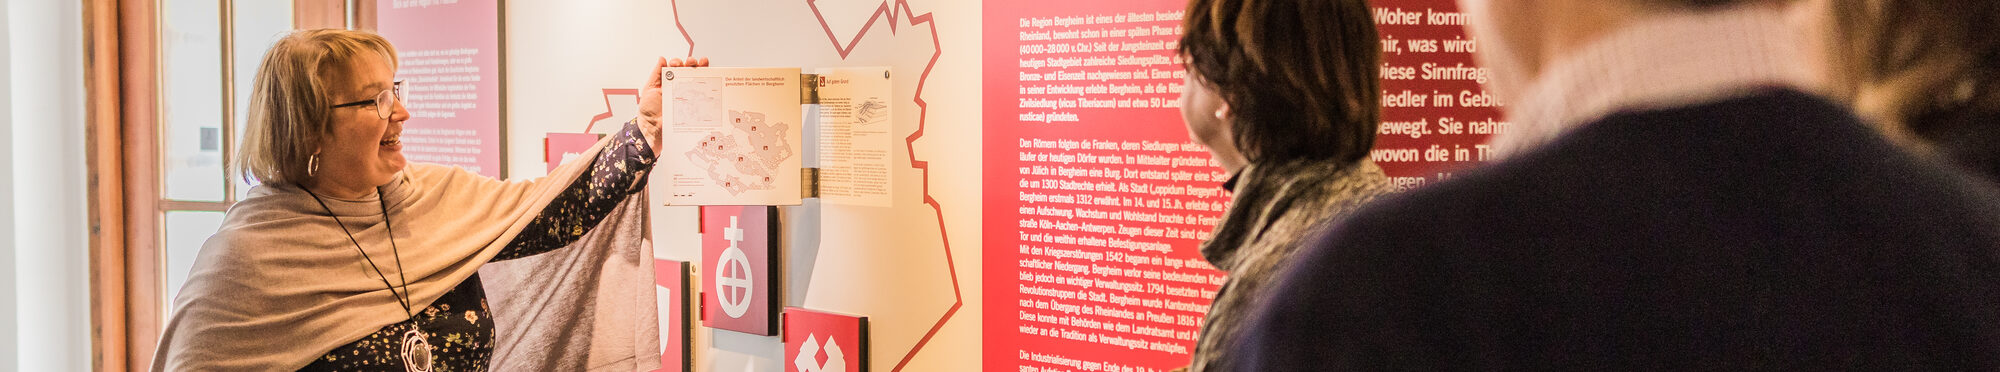 Eine Frau zeigt mit dem Finger auf eine Karte während einer Führung durch ein Museum